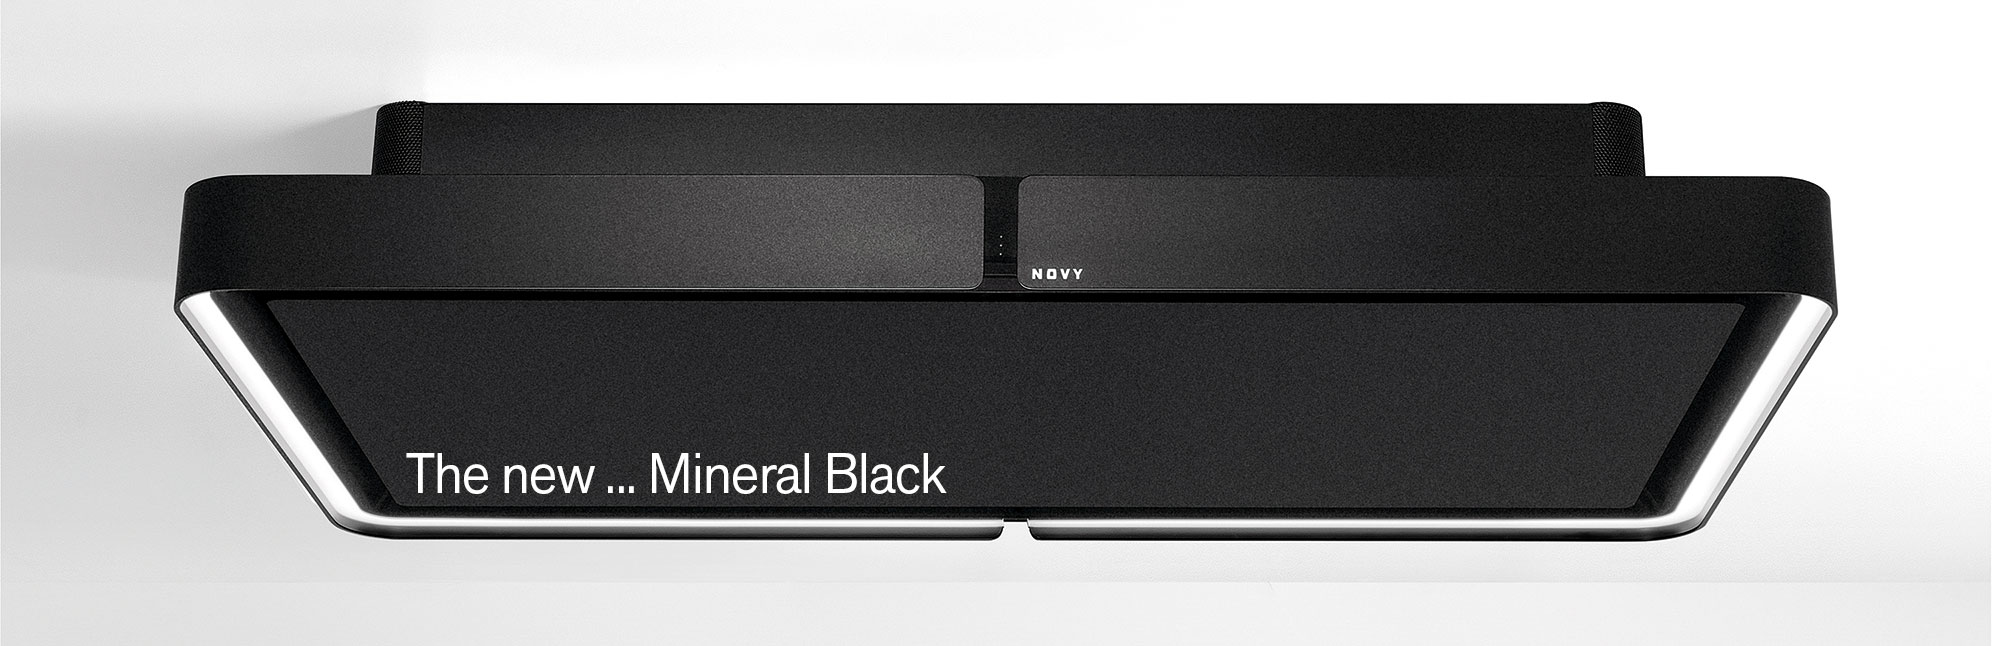 232 Mineral Black 2000 646